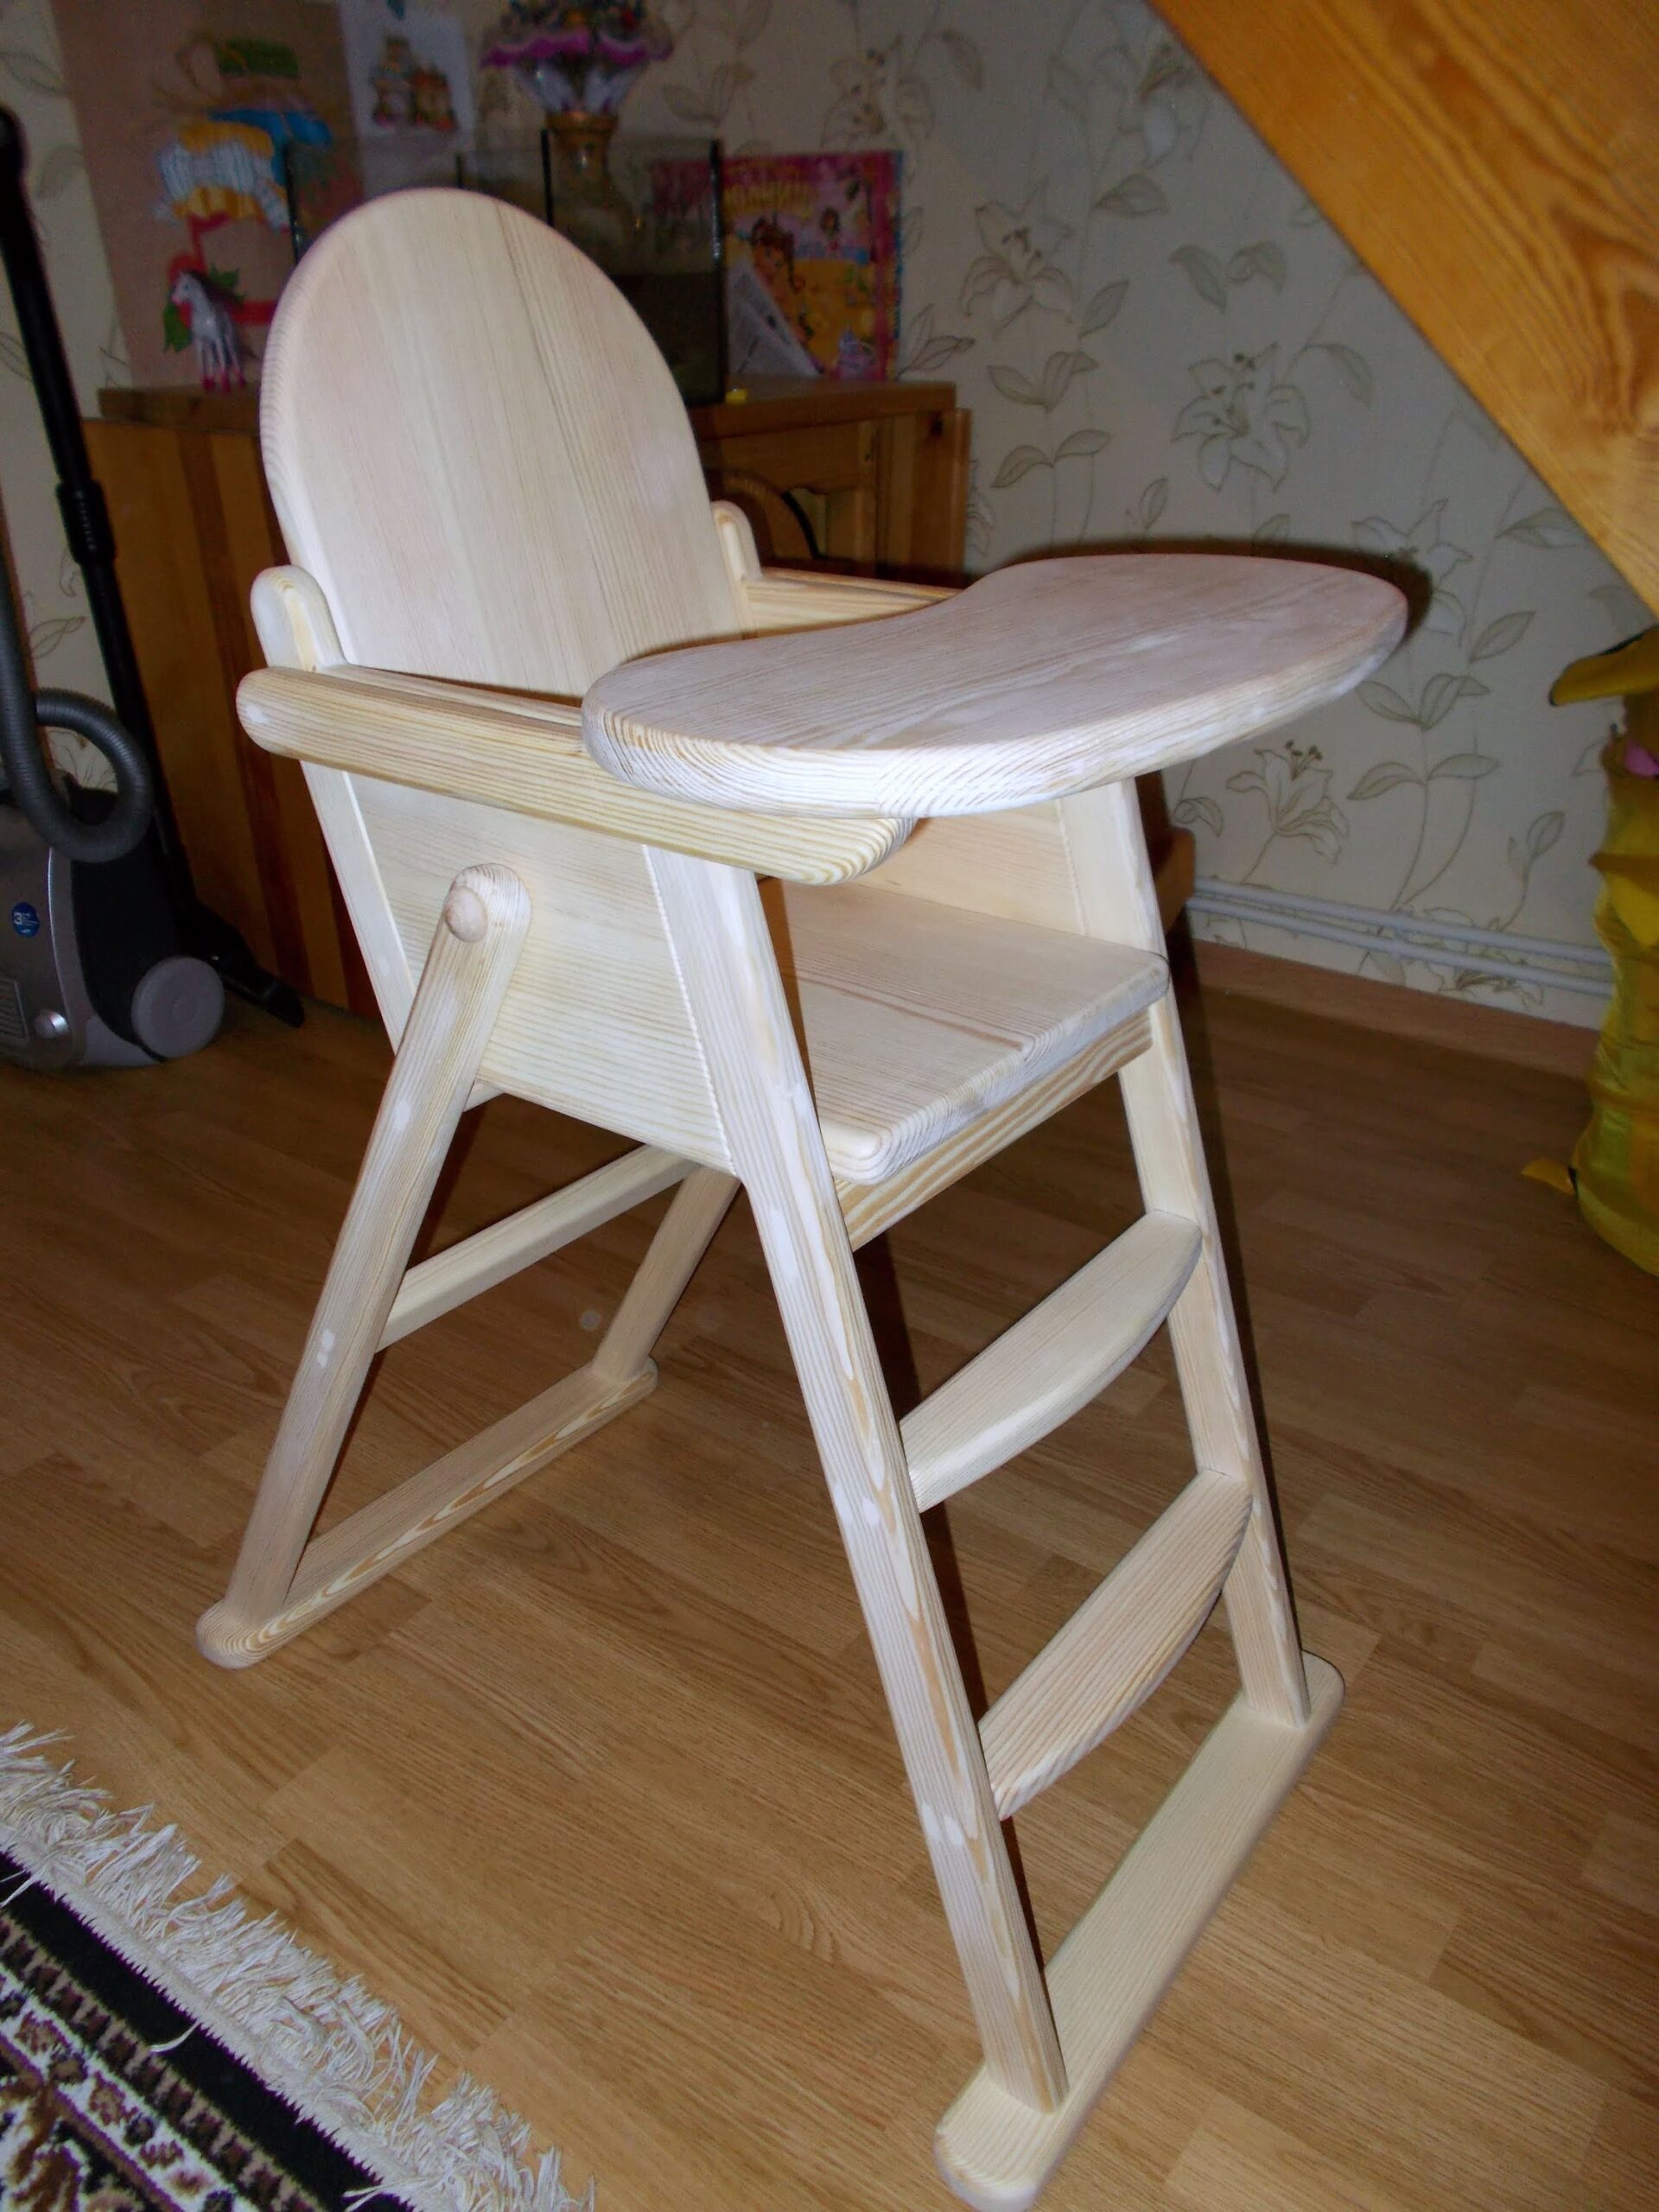 Как сделать деревянный детский стульчик своими руками (фото-руководство): 2 комментария